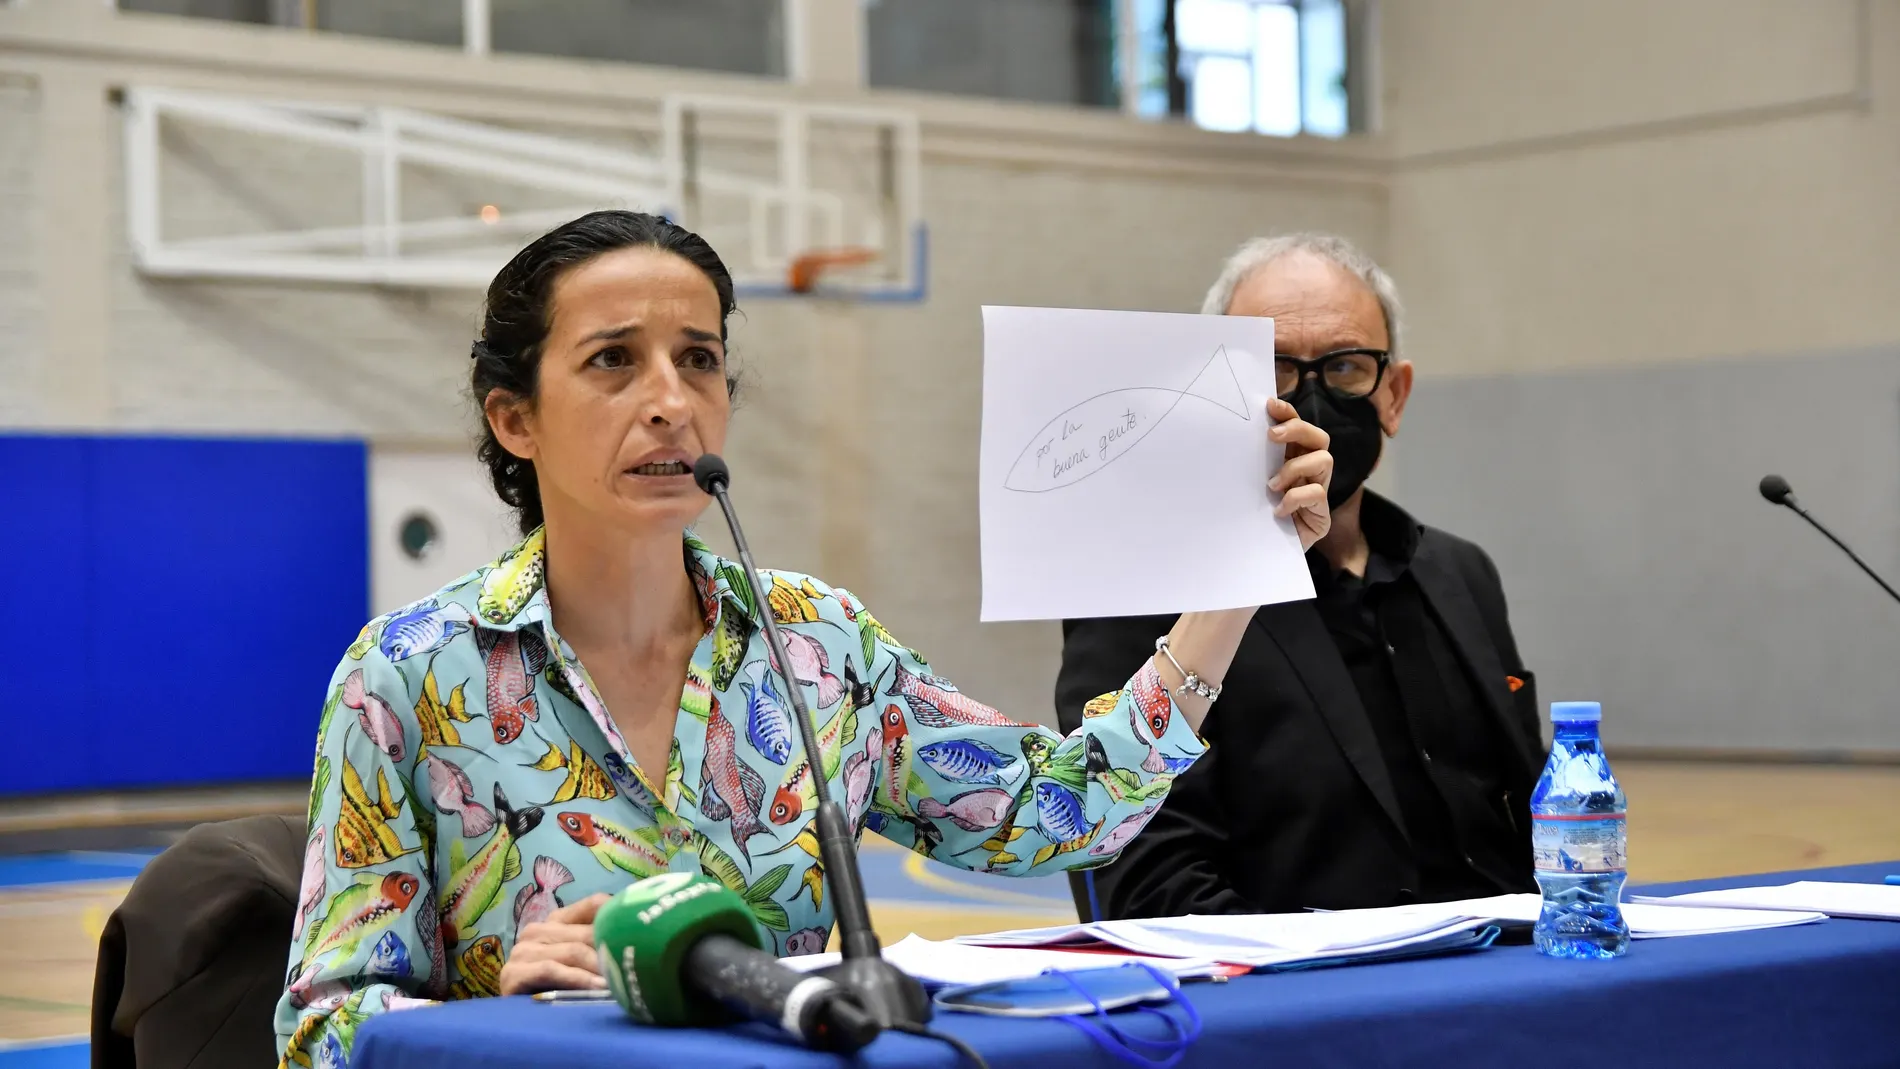 Patricia Ramírez, la madre del niño Gabriel Cruz, asesinado por la expareja del padre, durante una rueda de prensa este lunes en Almería